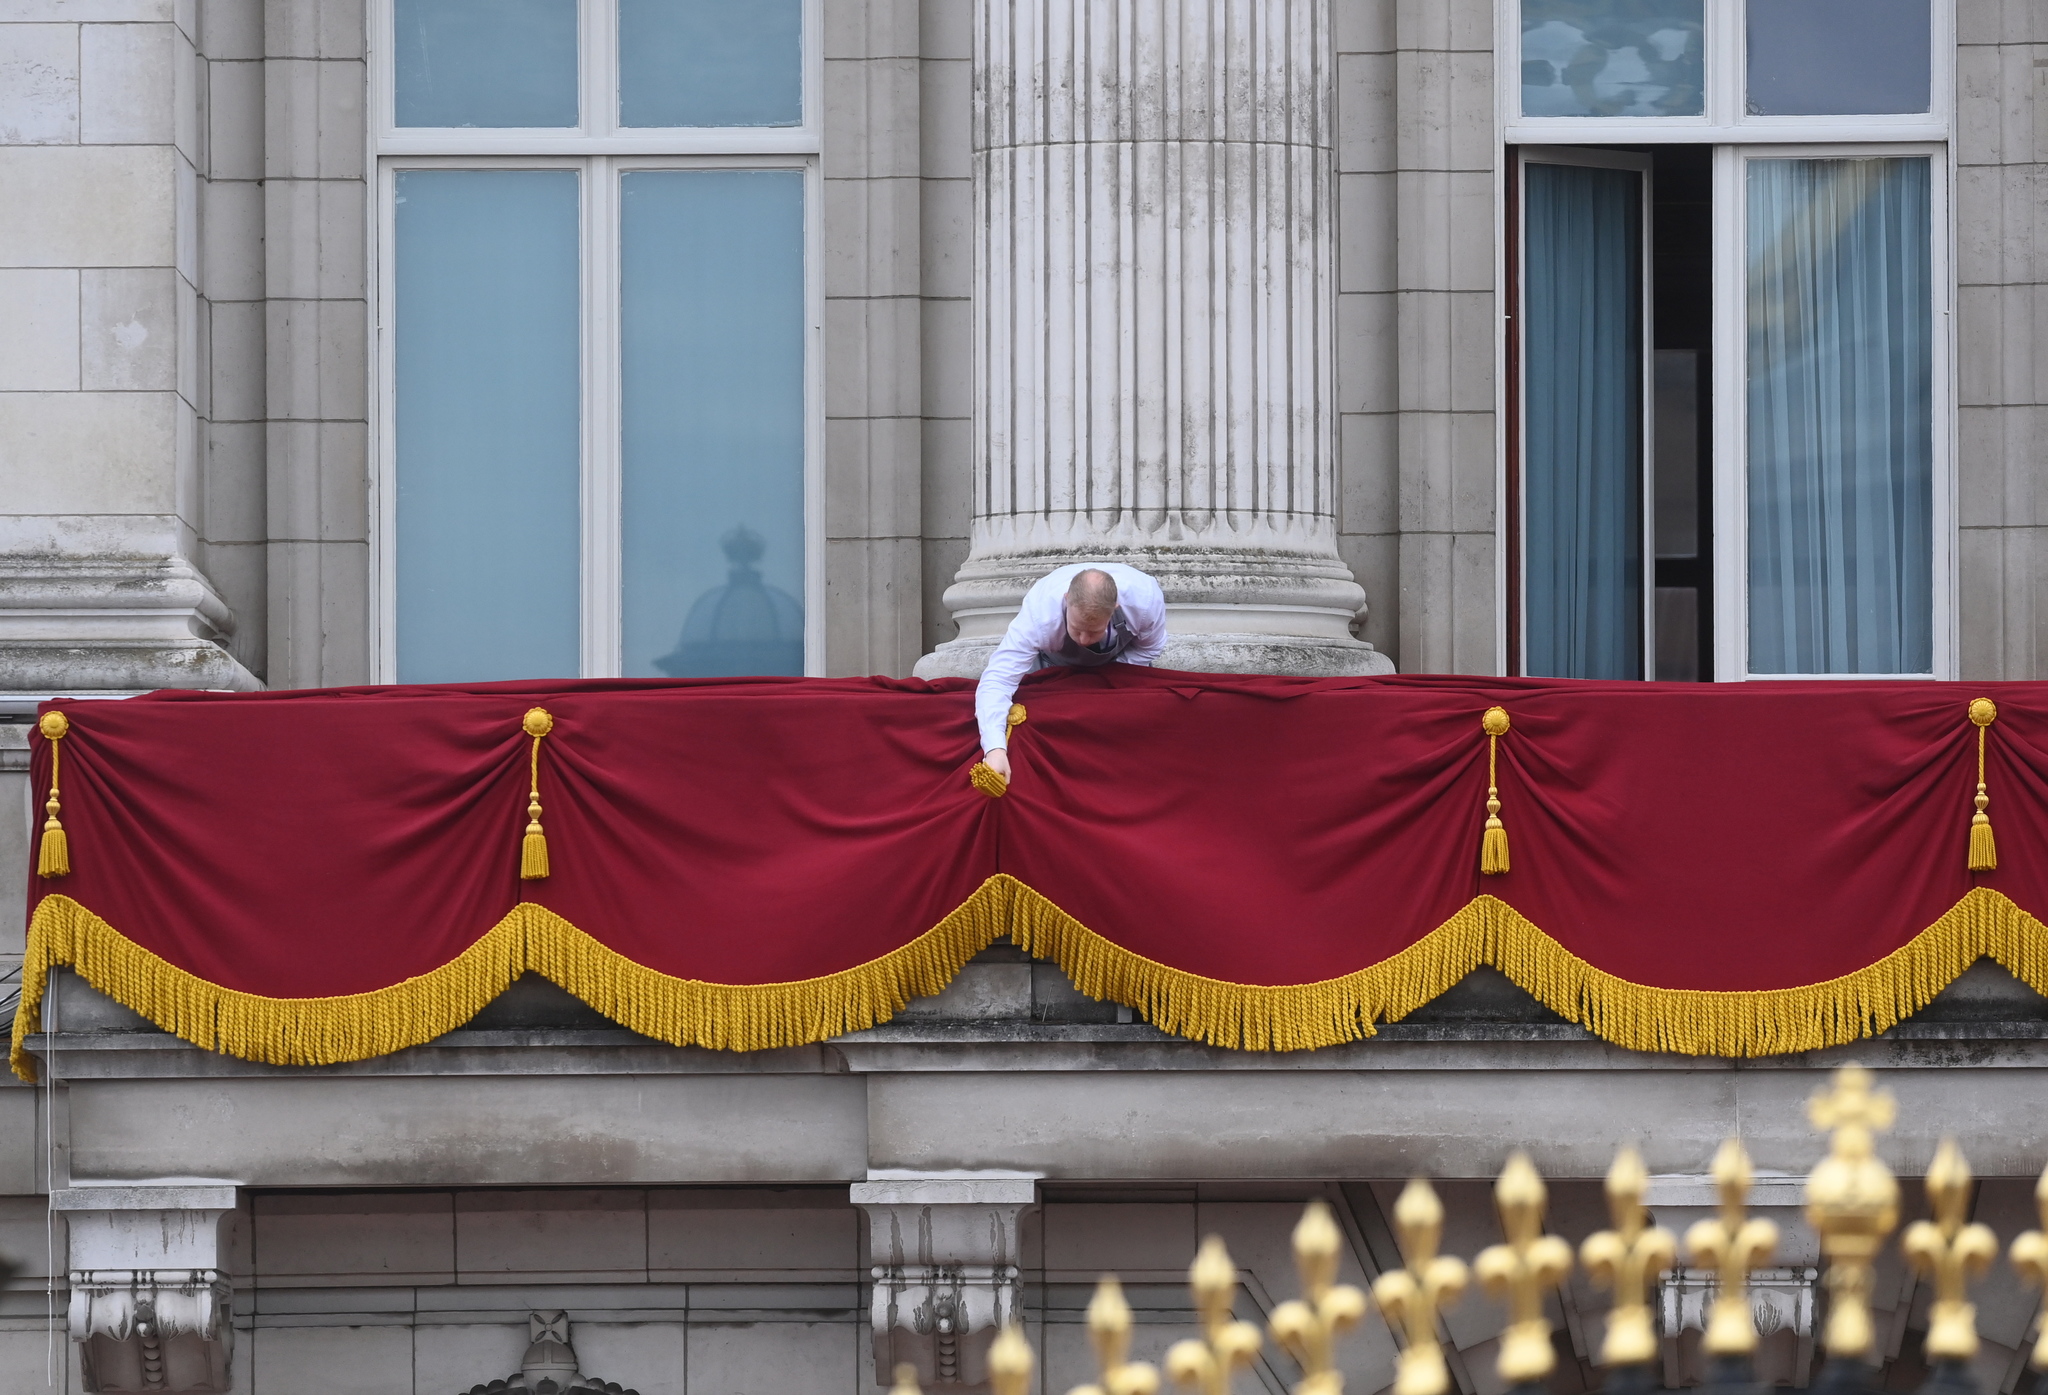 El personal del Palacio de Buckingham ha preparado con mimo todos los detalles para que la coronación sea perfecta. En la imagen, un empleado engalana el balcón desde el que saludará la Familia Real.